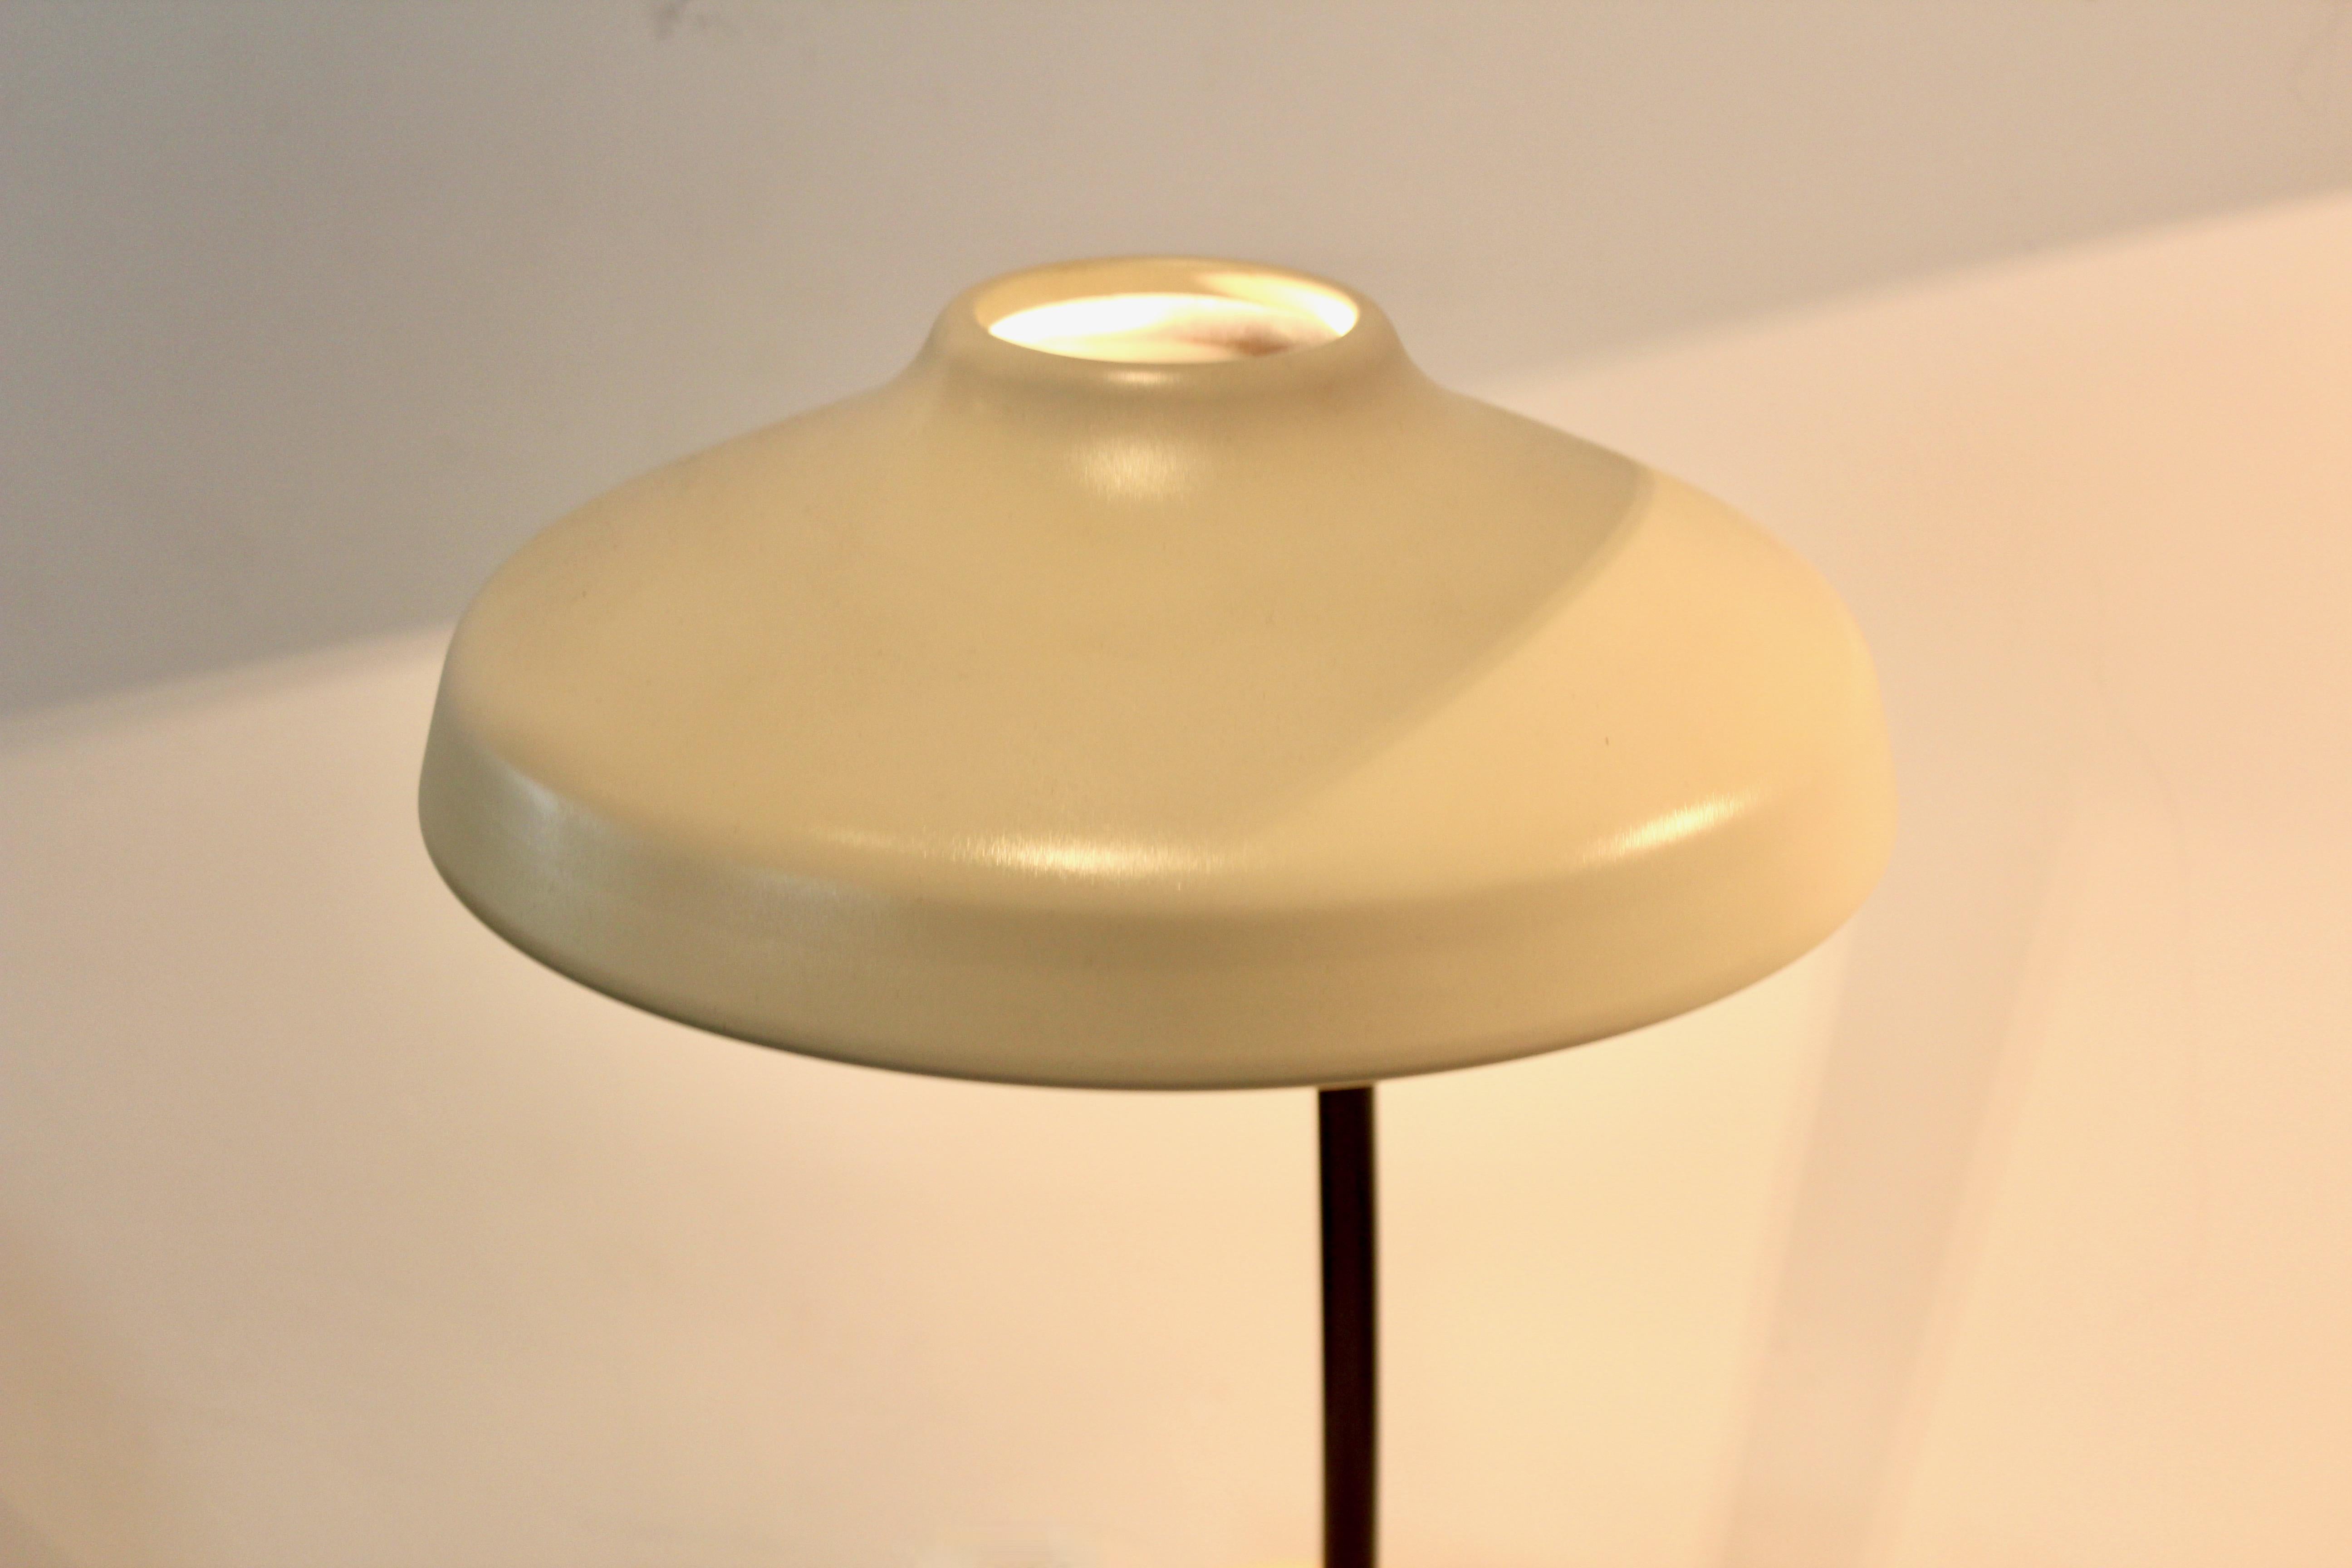 Charming Set of Adjustable Hemi Desk or Table Lamps, Sweden, 1960s For Sale 1